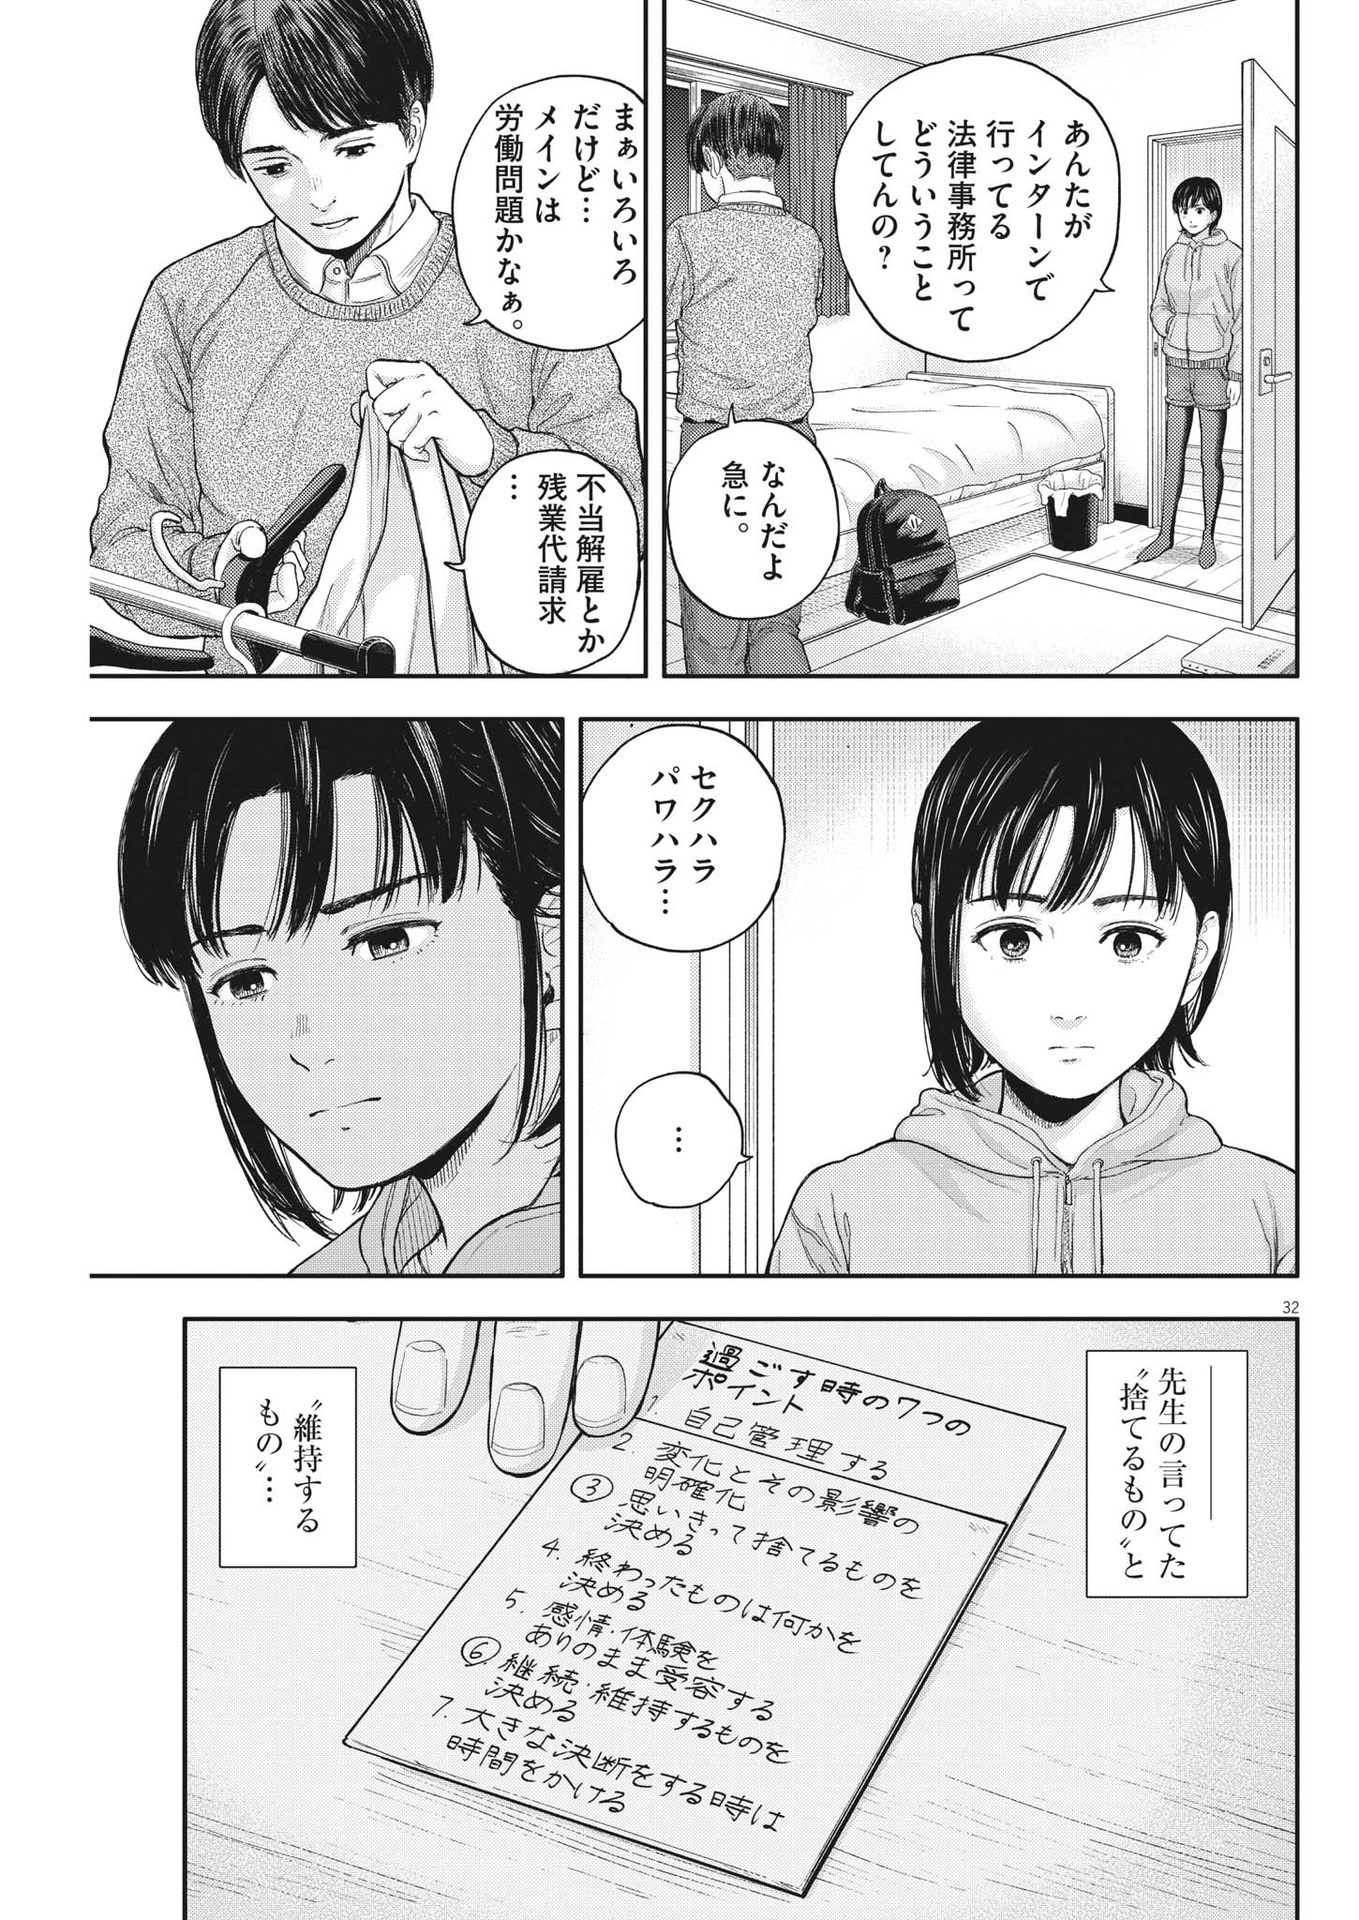 Yumenashi-sensei no Shinroshidou - Chapter 2 - Page 32